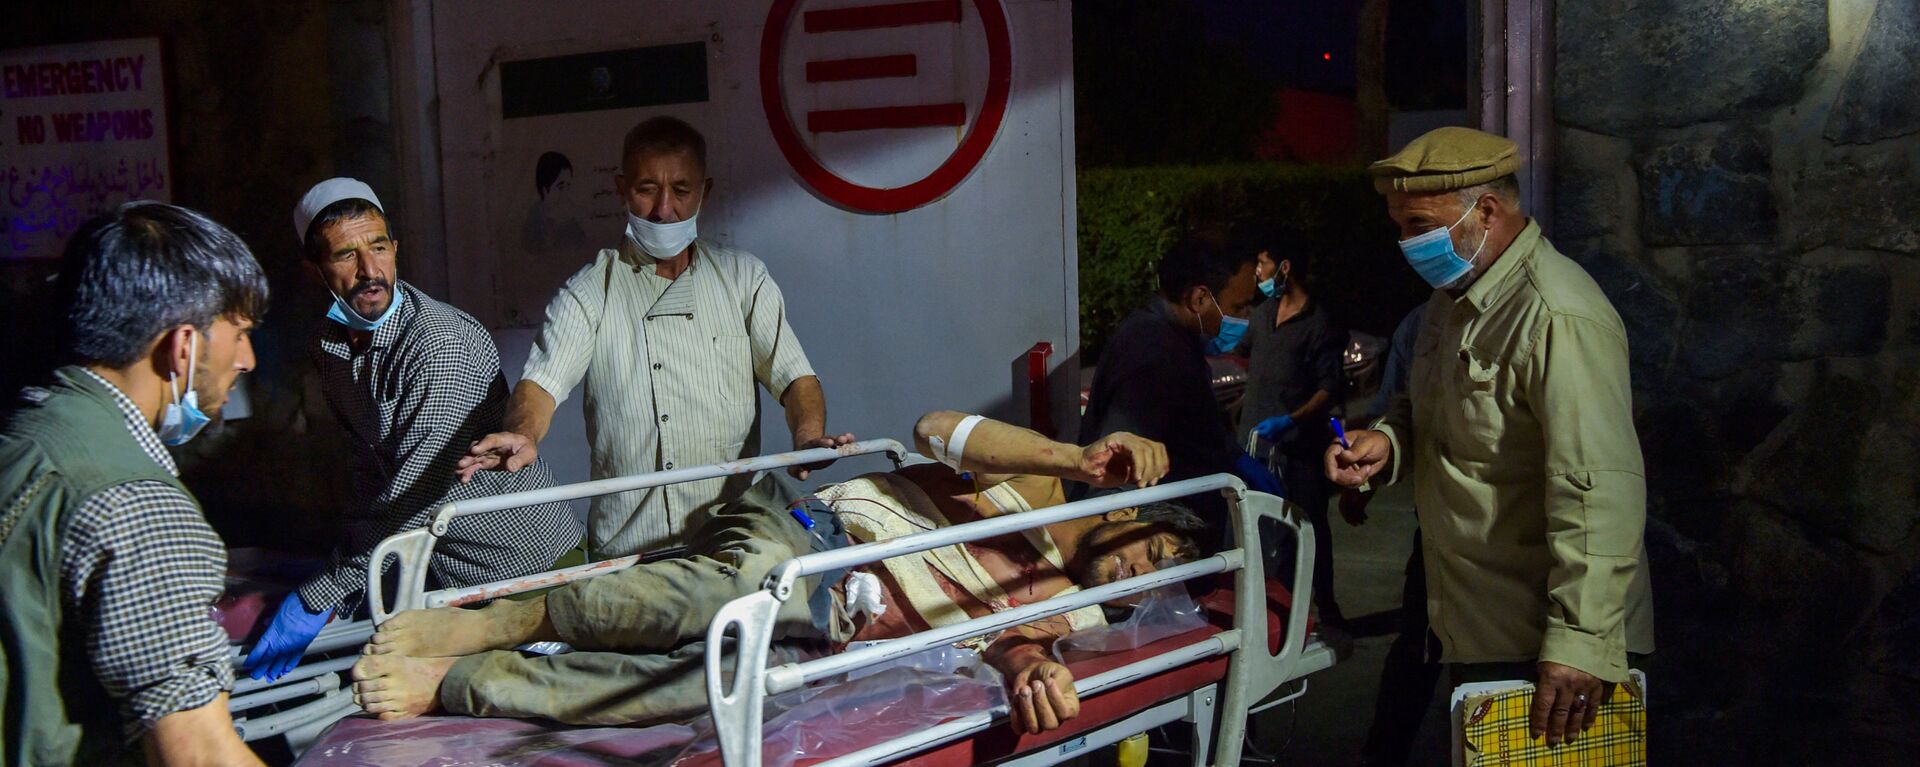 Медики помогают пострадавшим от двух мощных взрывов, произошедших в Кабуле - Sputnik Тоҷикистон, 1920, 03.10.2021